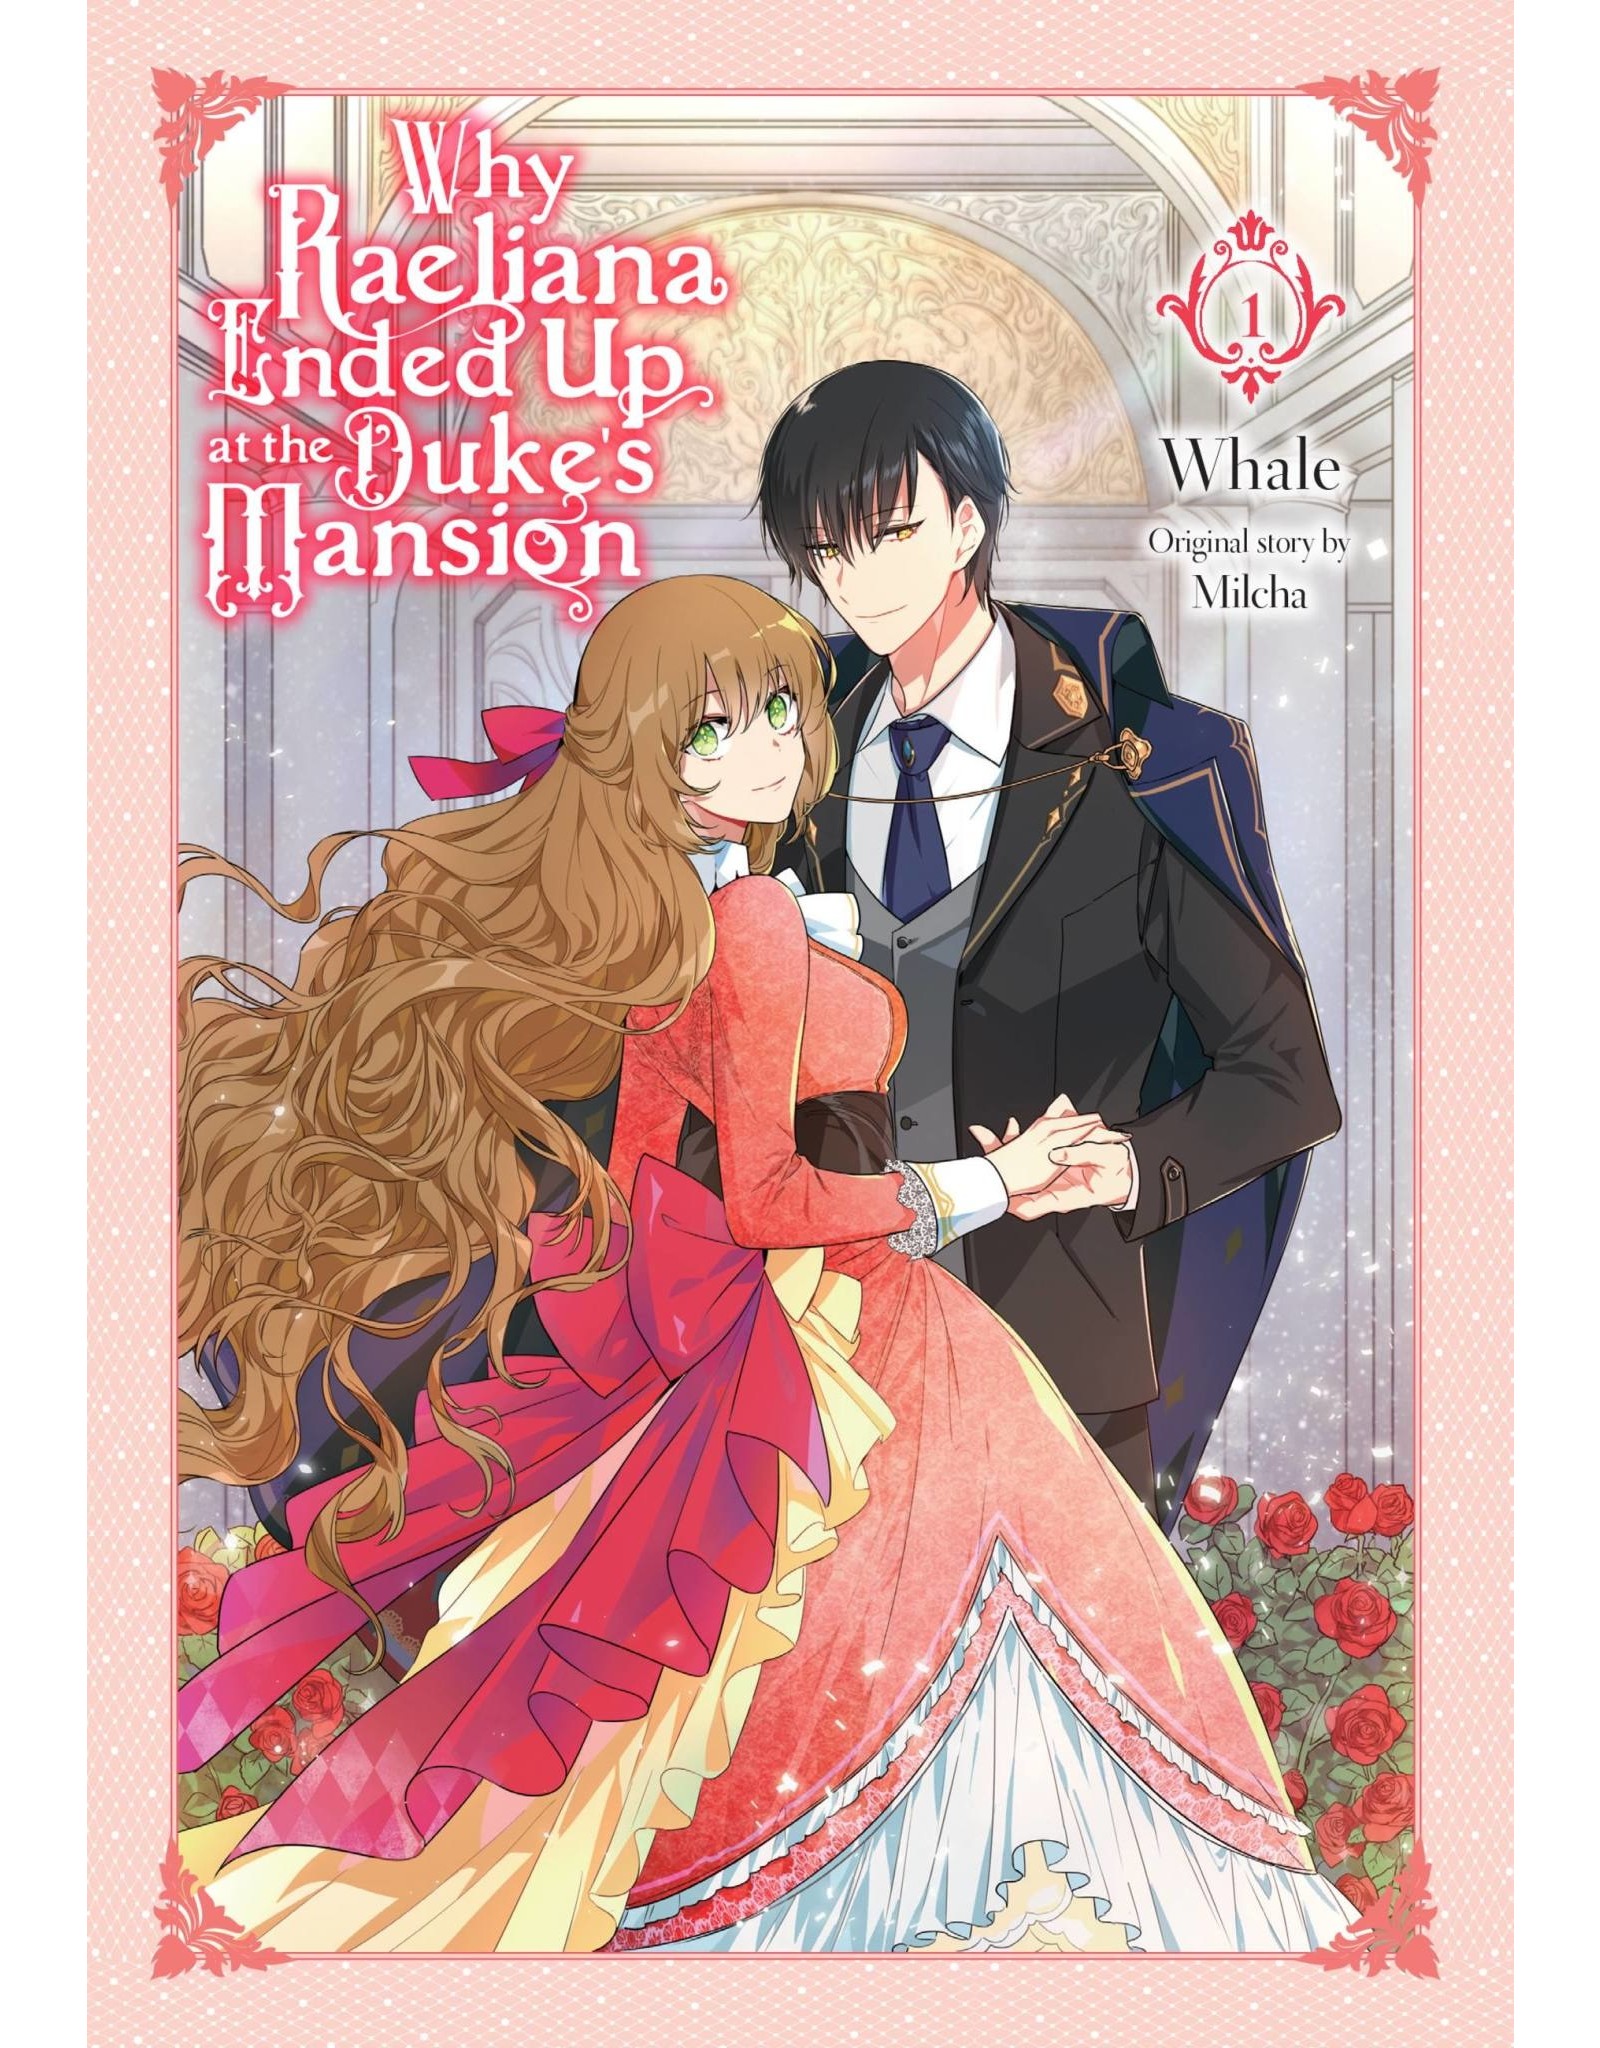 Why Raeliana Ended Up at The Duke's Mansion 01 (Engelstalig) - Manga